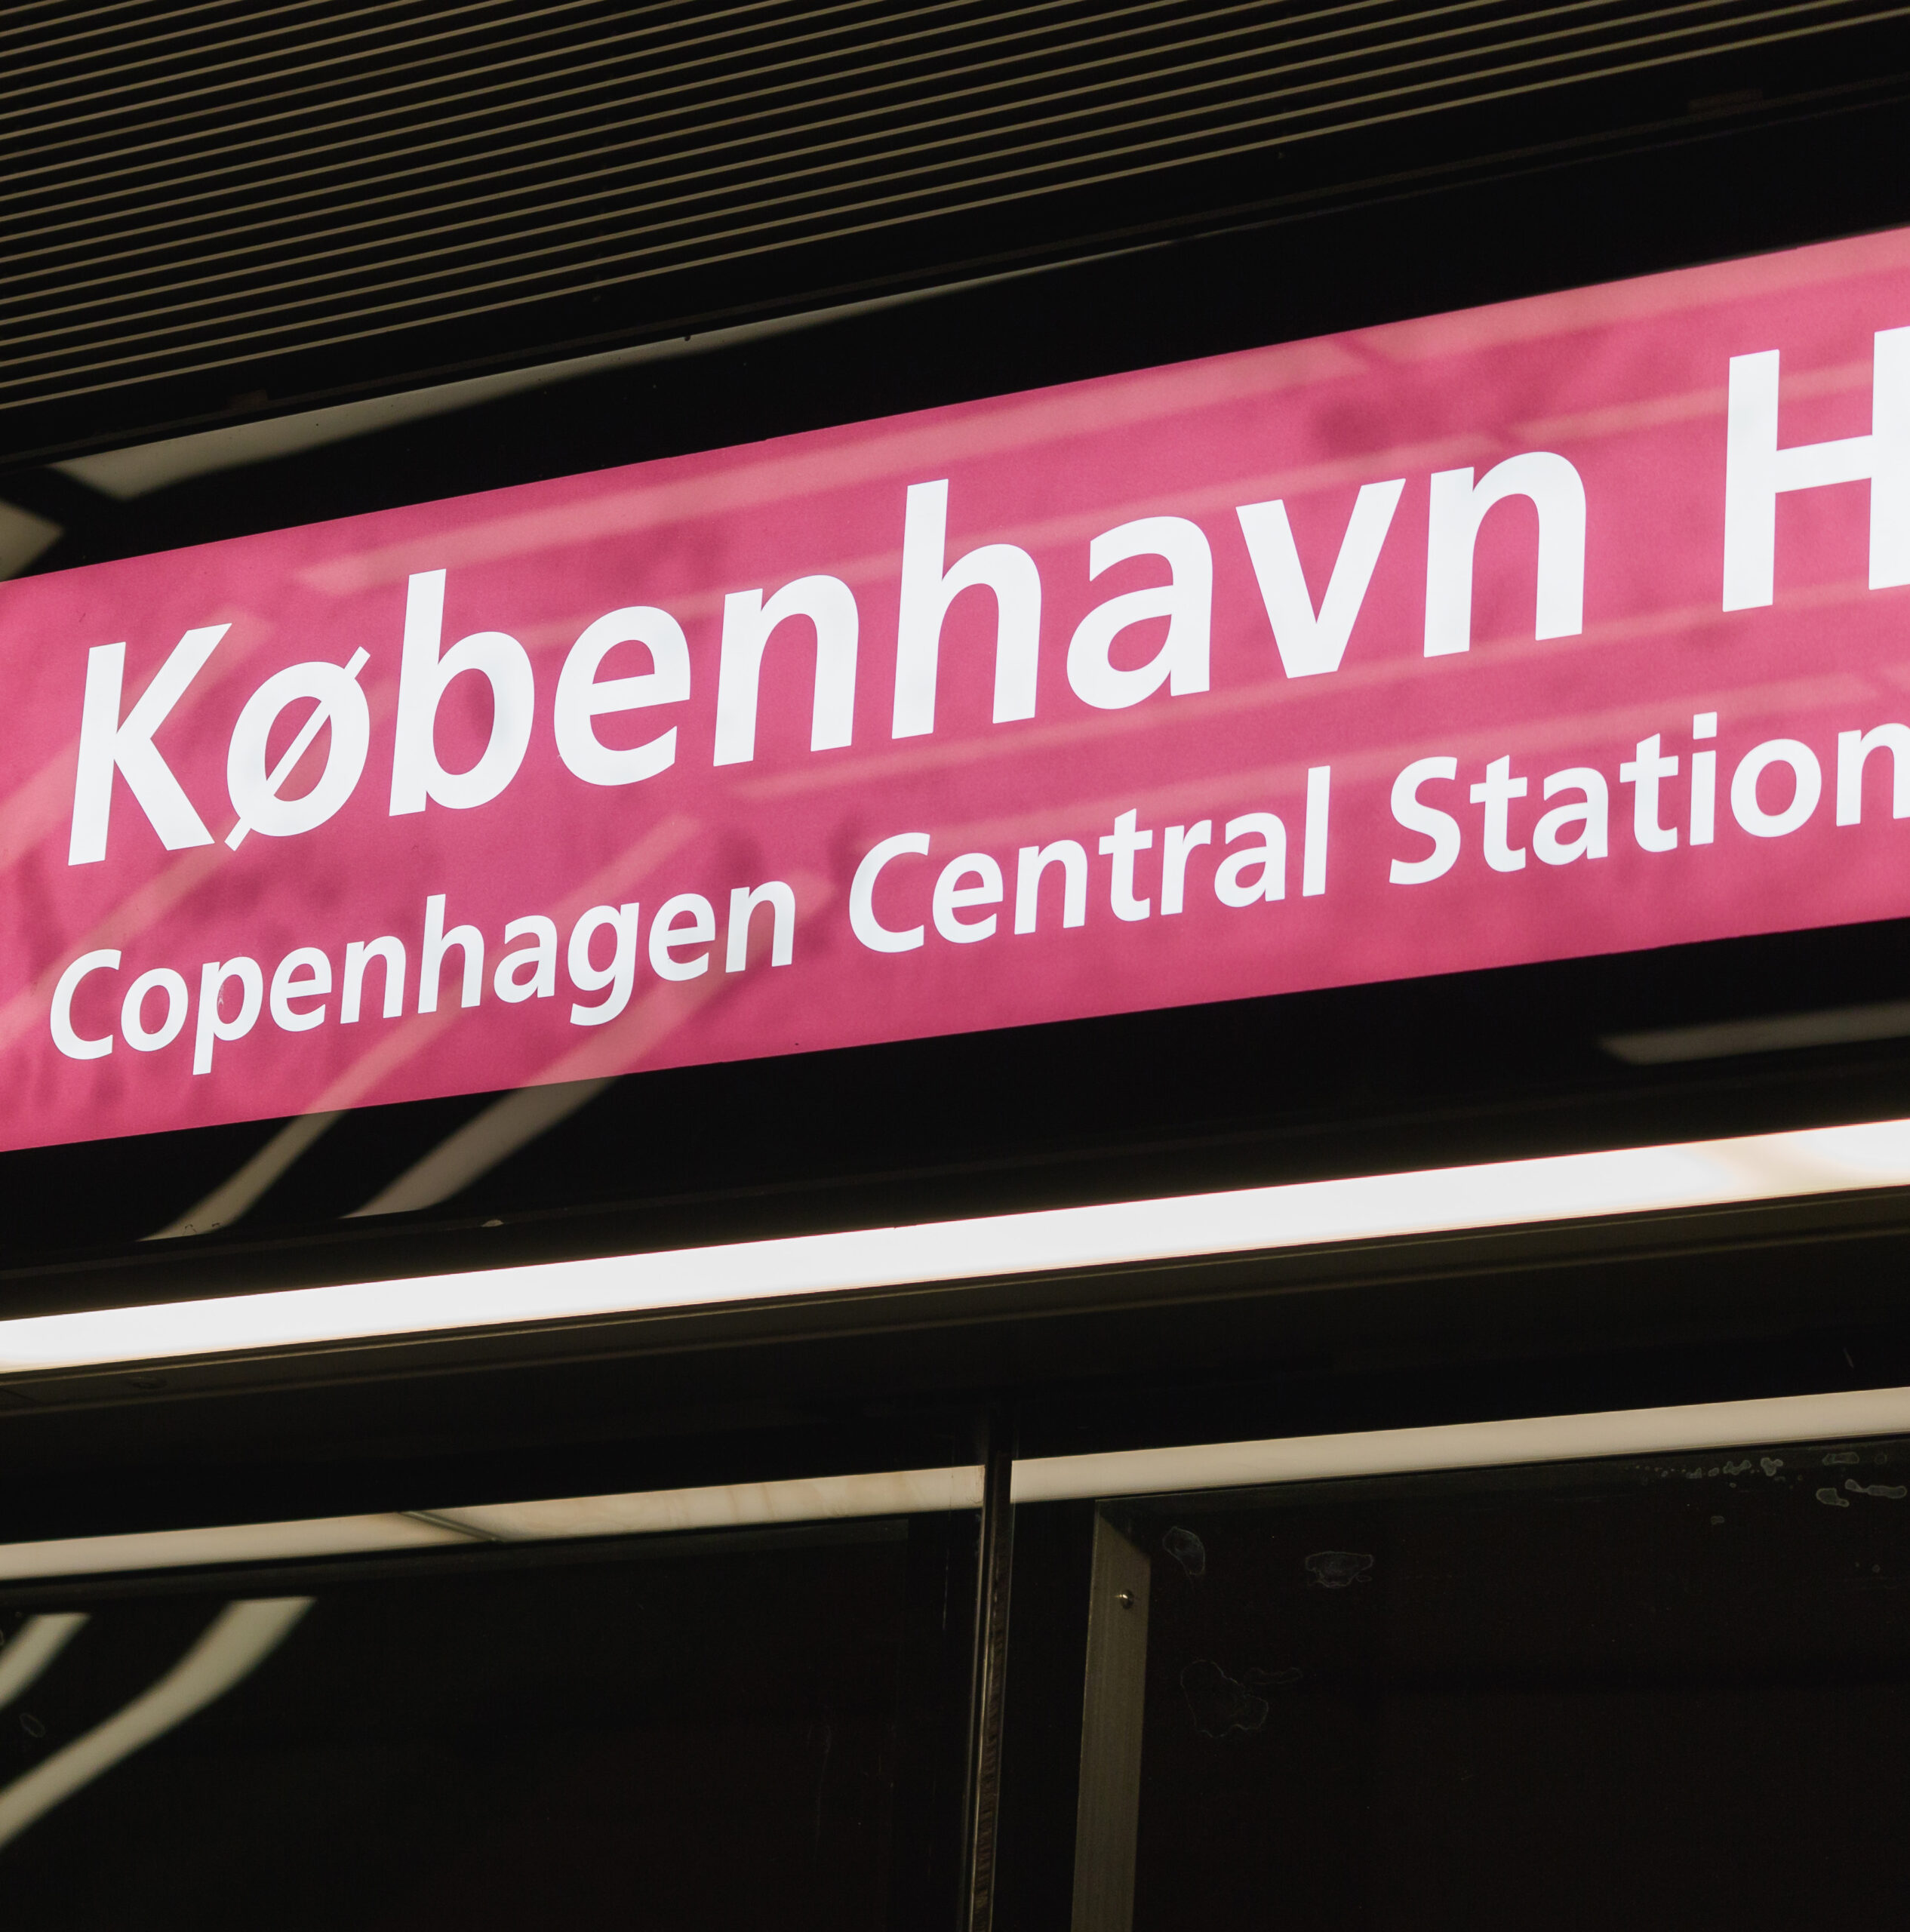 Metro de Copenhague – Cityringen (Circle Line): Reducción de riesgos mediante el aseguramiento progresivo en el Metro de Copenhague